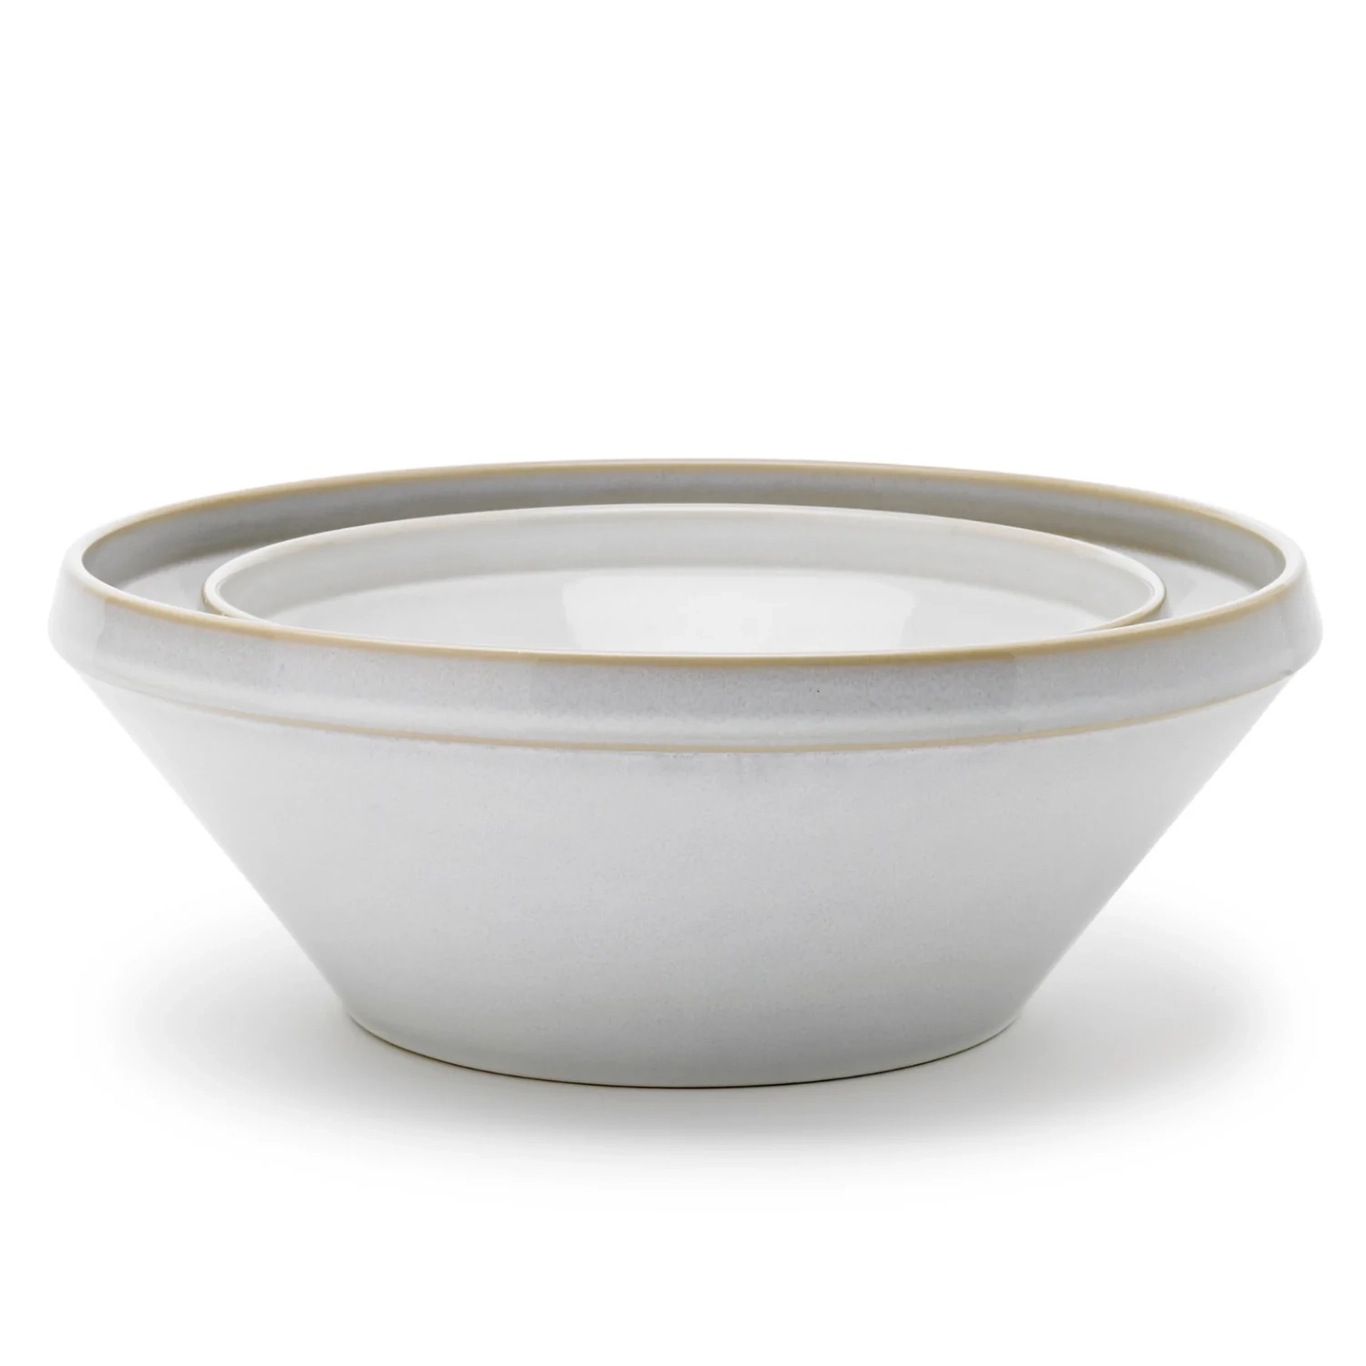 Tavola Dough Bowl 2 Pieces, White